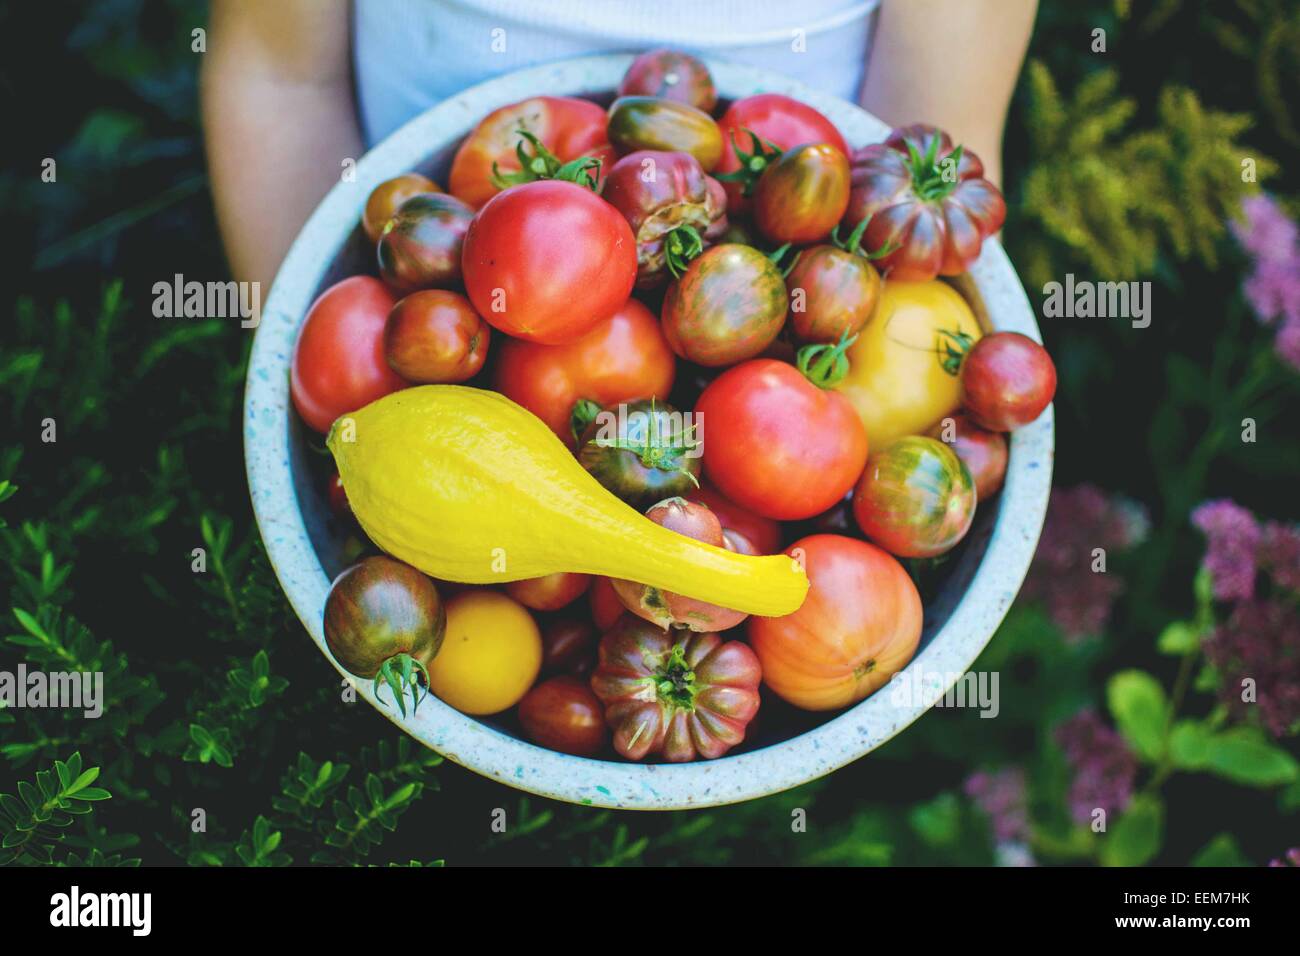 Junge, der im Garten steht und eine Schüssel mit frisch gepflückten Tomaten hält Stockfoto